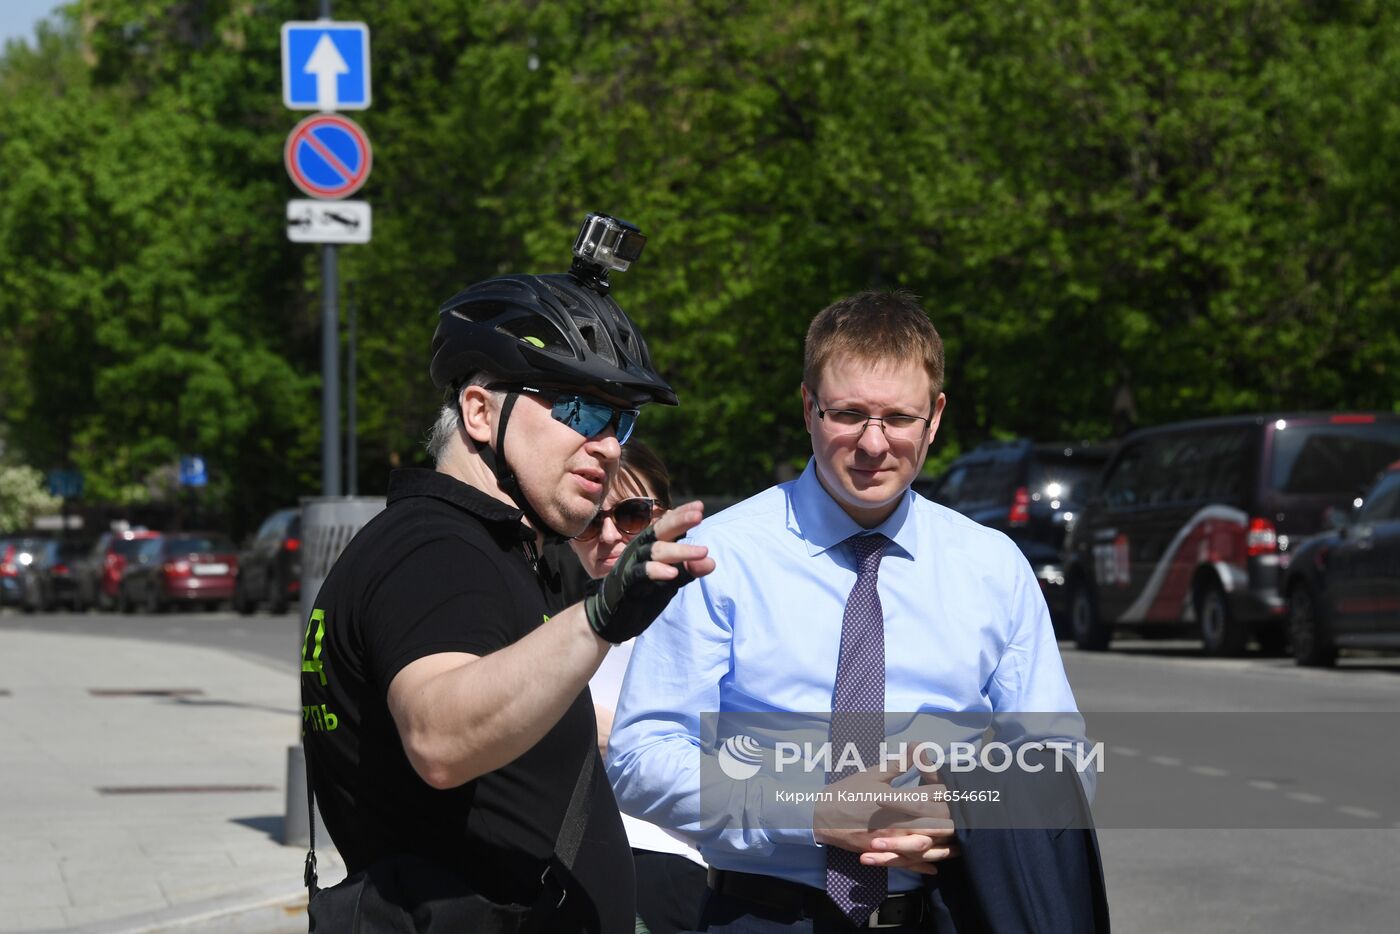 Начало работы велопатруля в Москве 